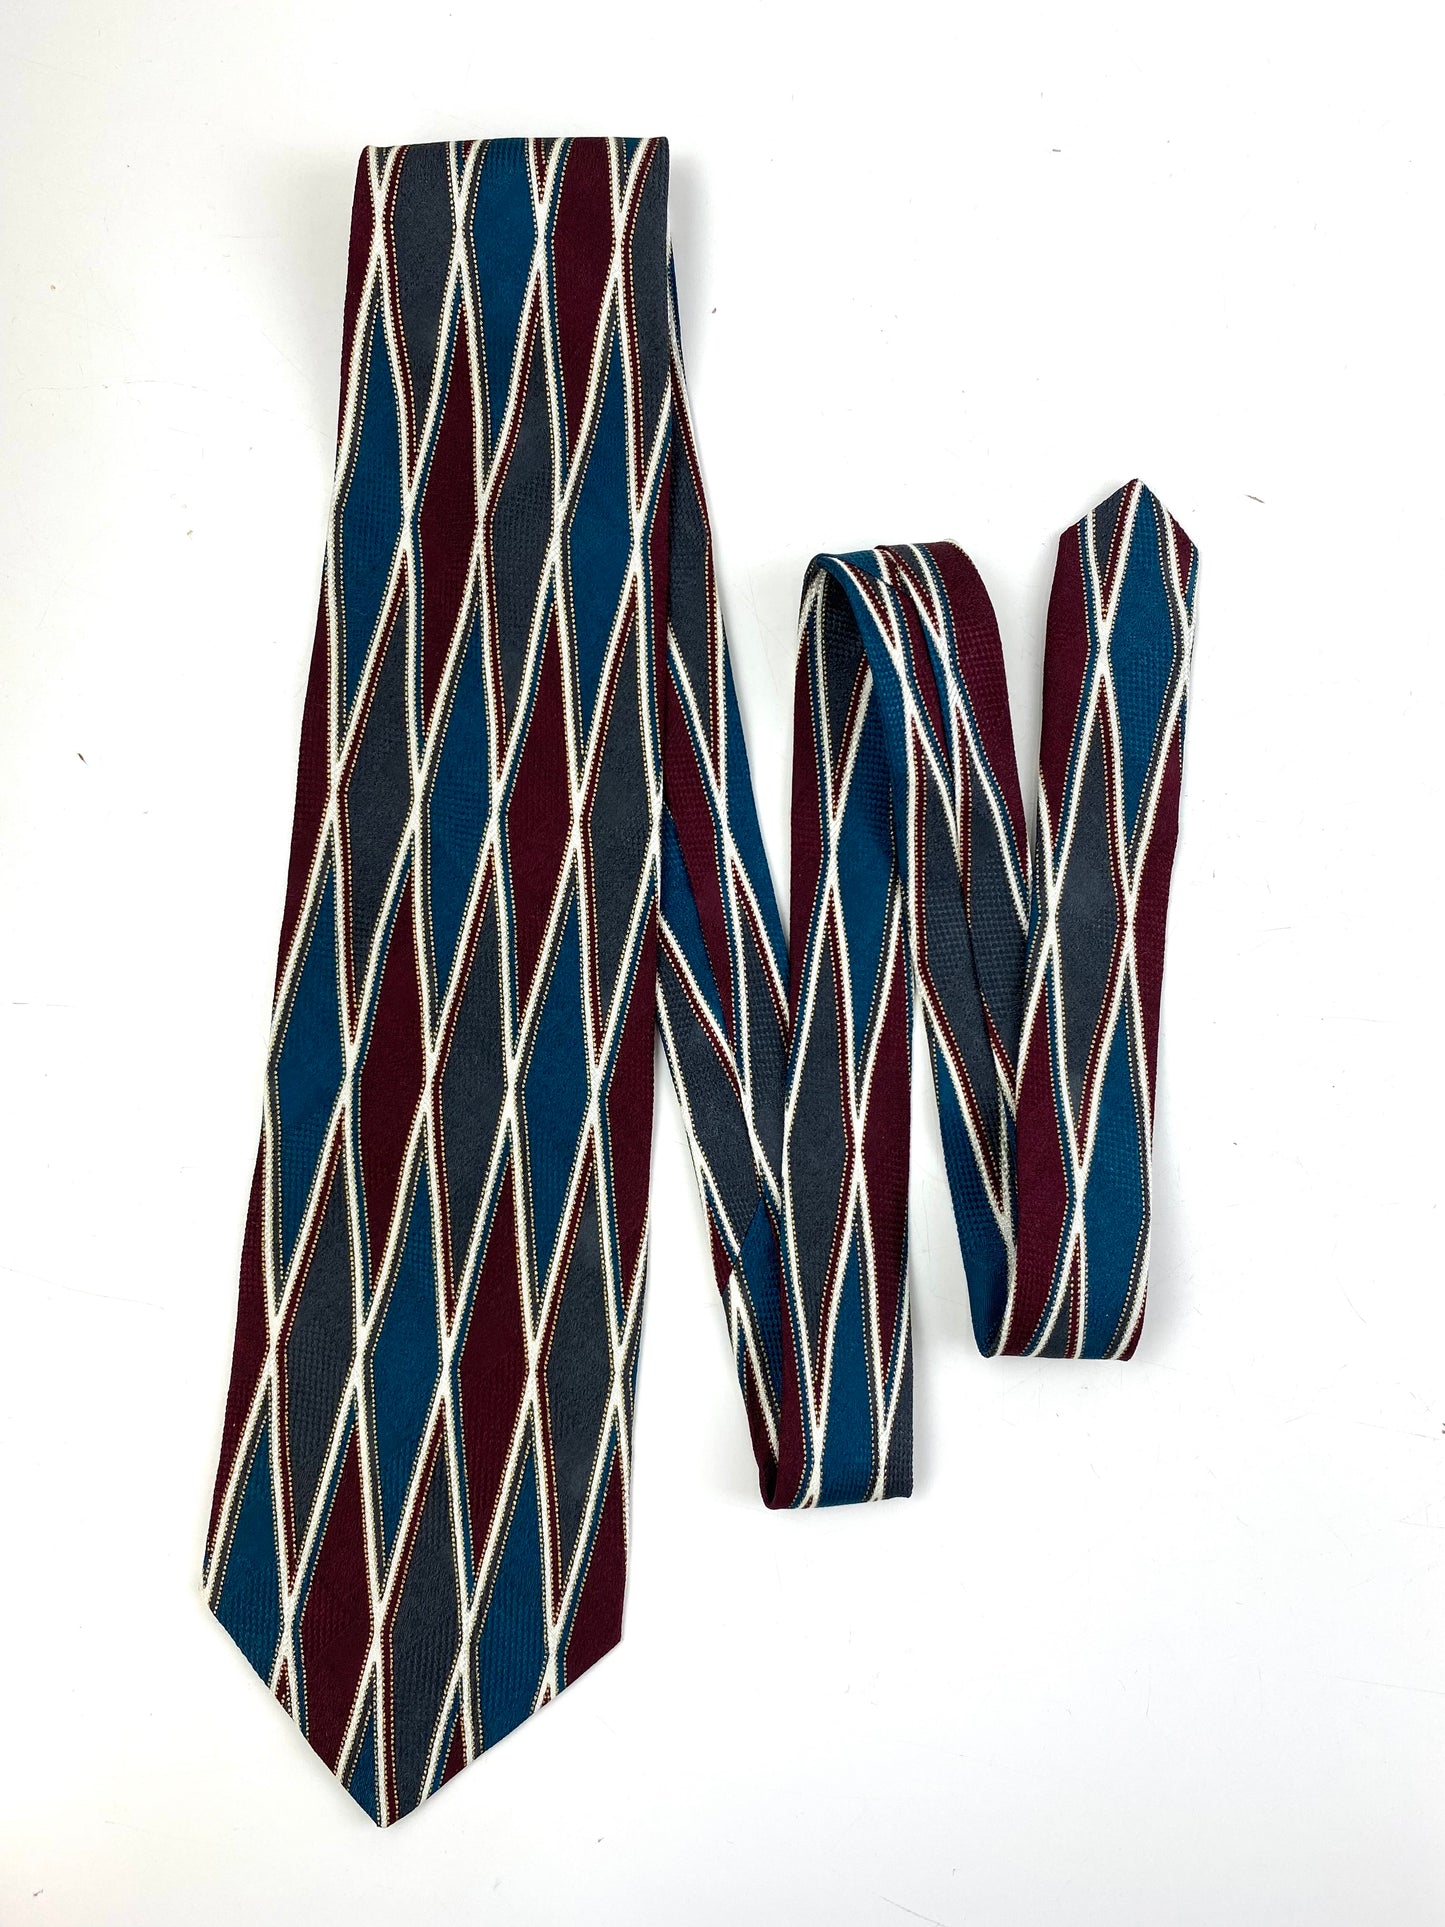 Front of: 90s Deadstock Silk Necktie, Men's Vintage Teal/ Maroon/ Grey Diamond Harlequin Pattern Tie, NOS